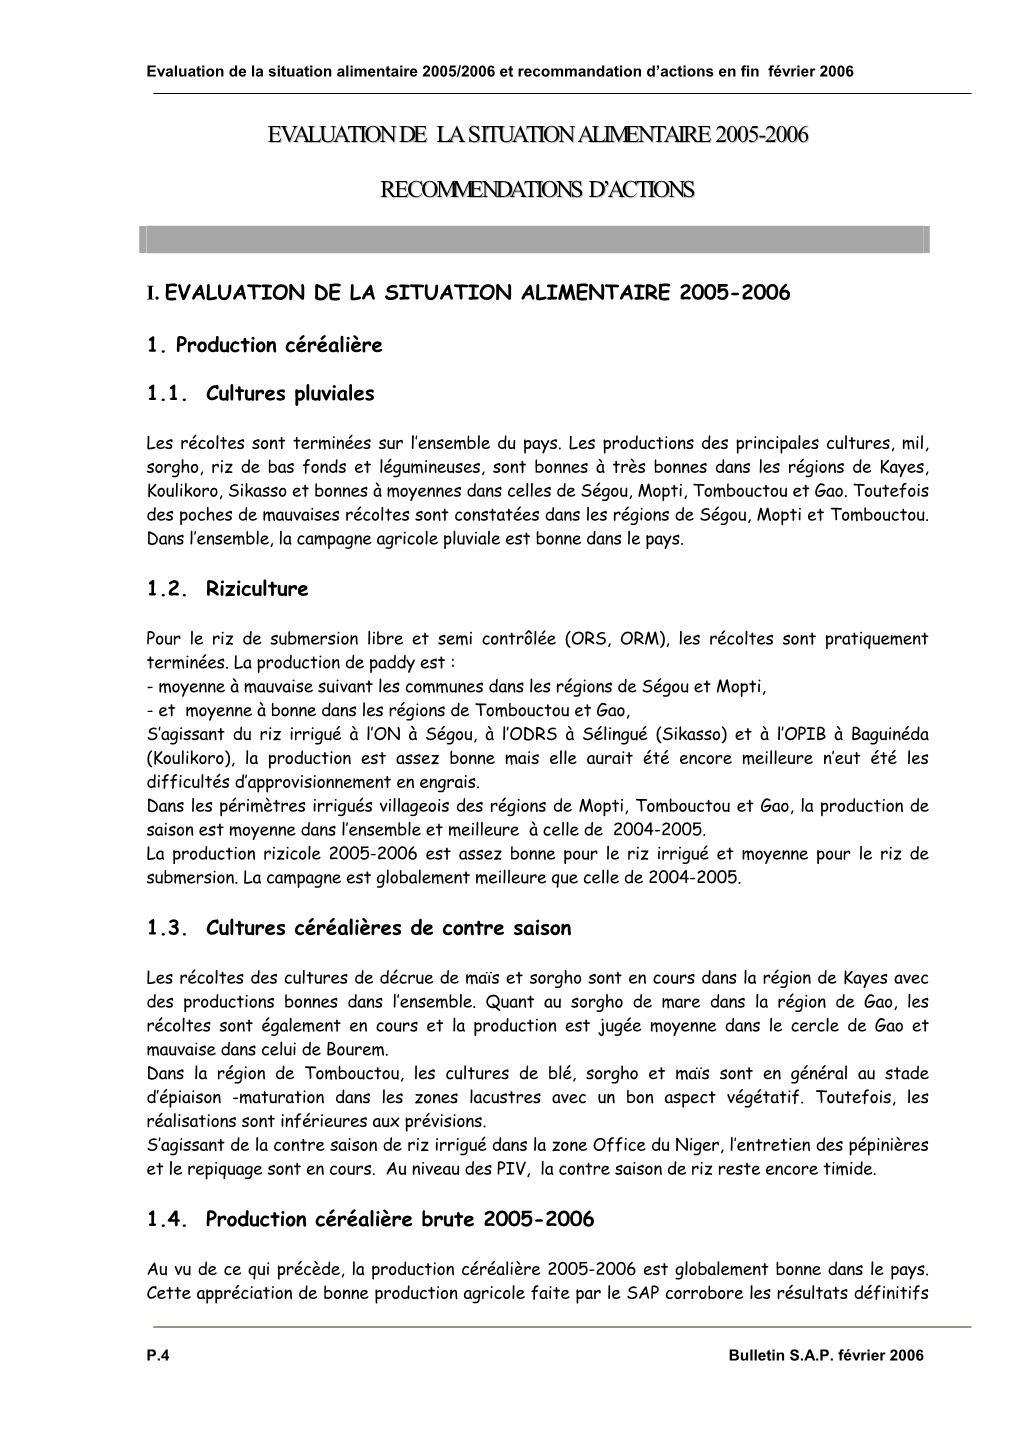 Evaluation De La Situation Alimentaire 2005-2006 Recommendations D'actions